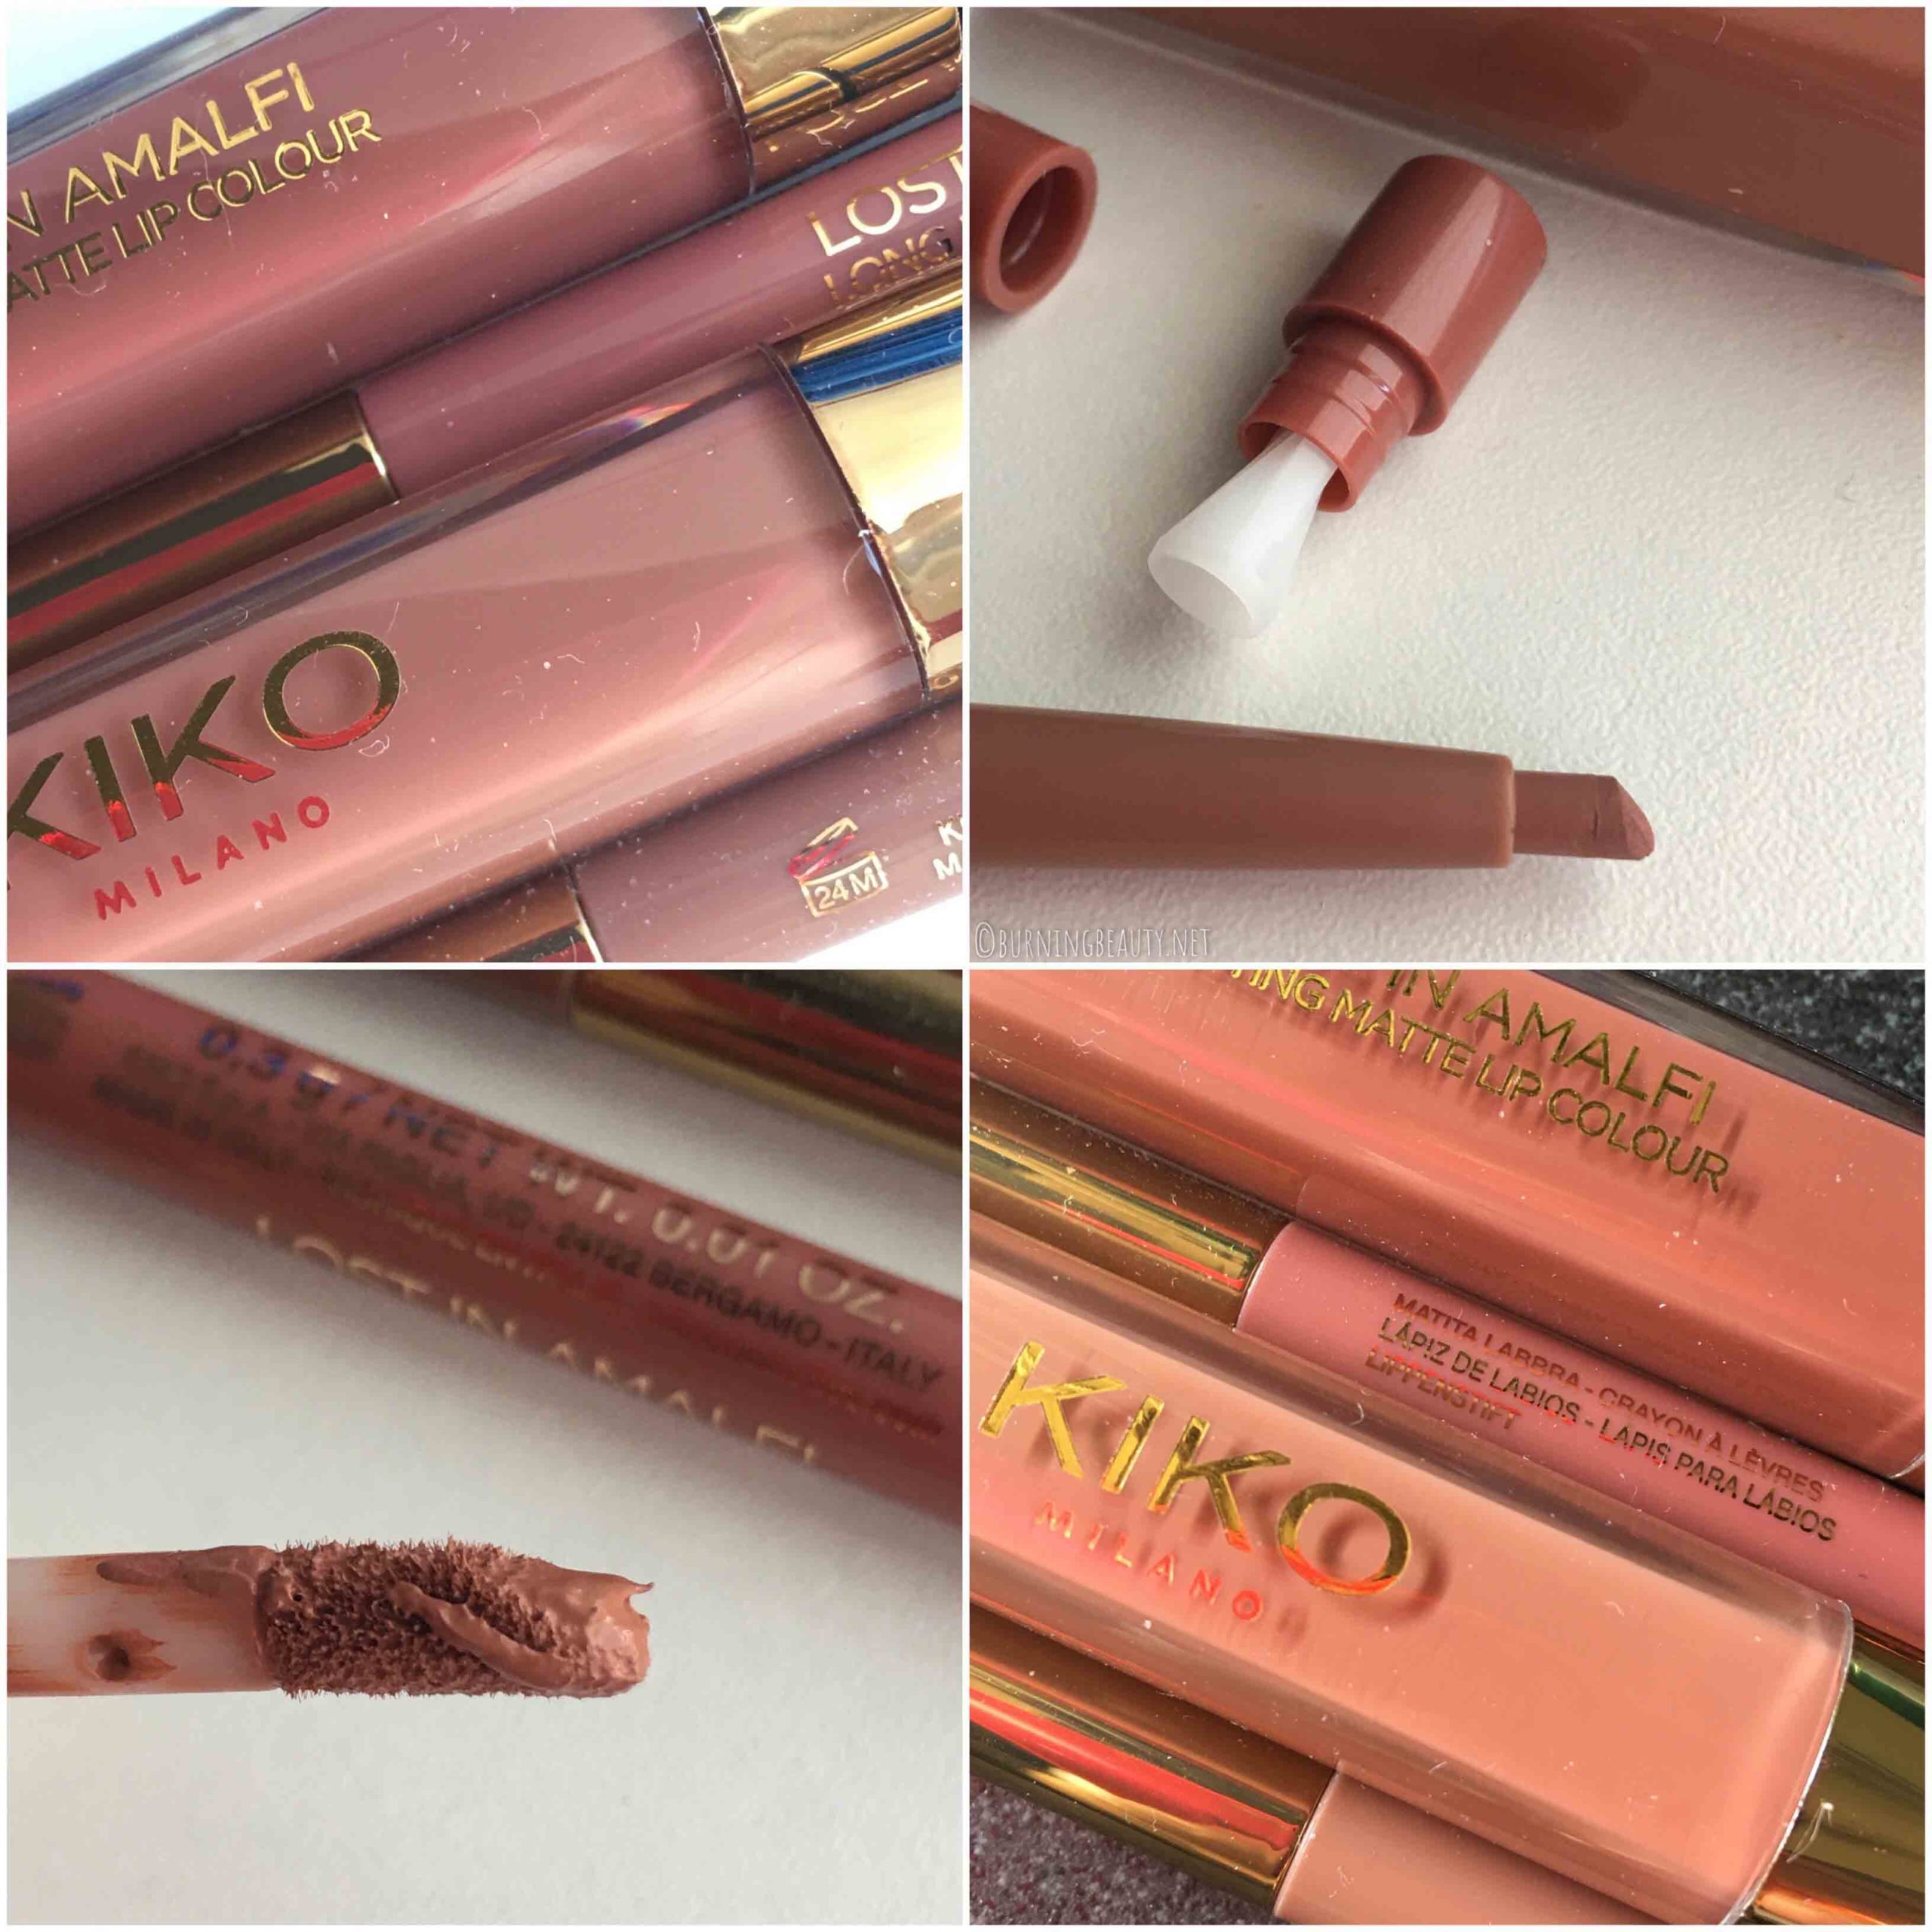 kiko lost in amalfi liquid lipstick pencil